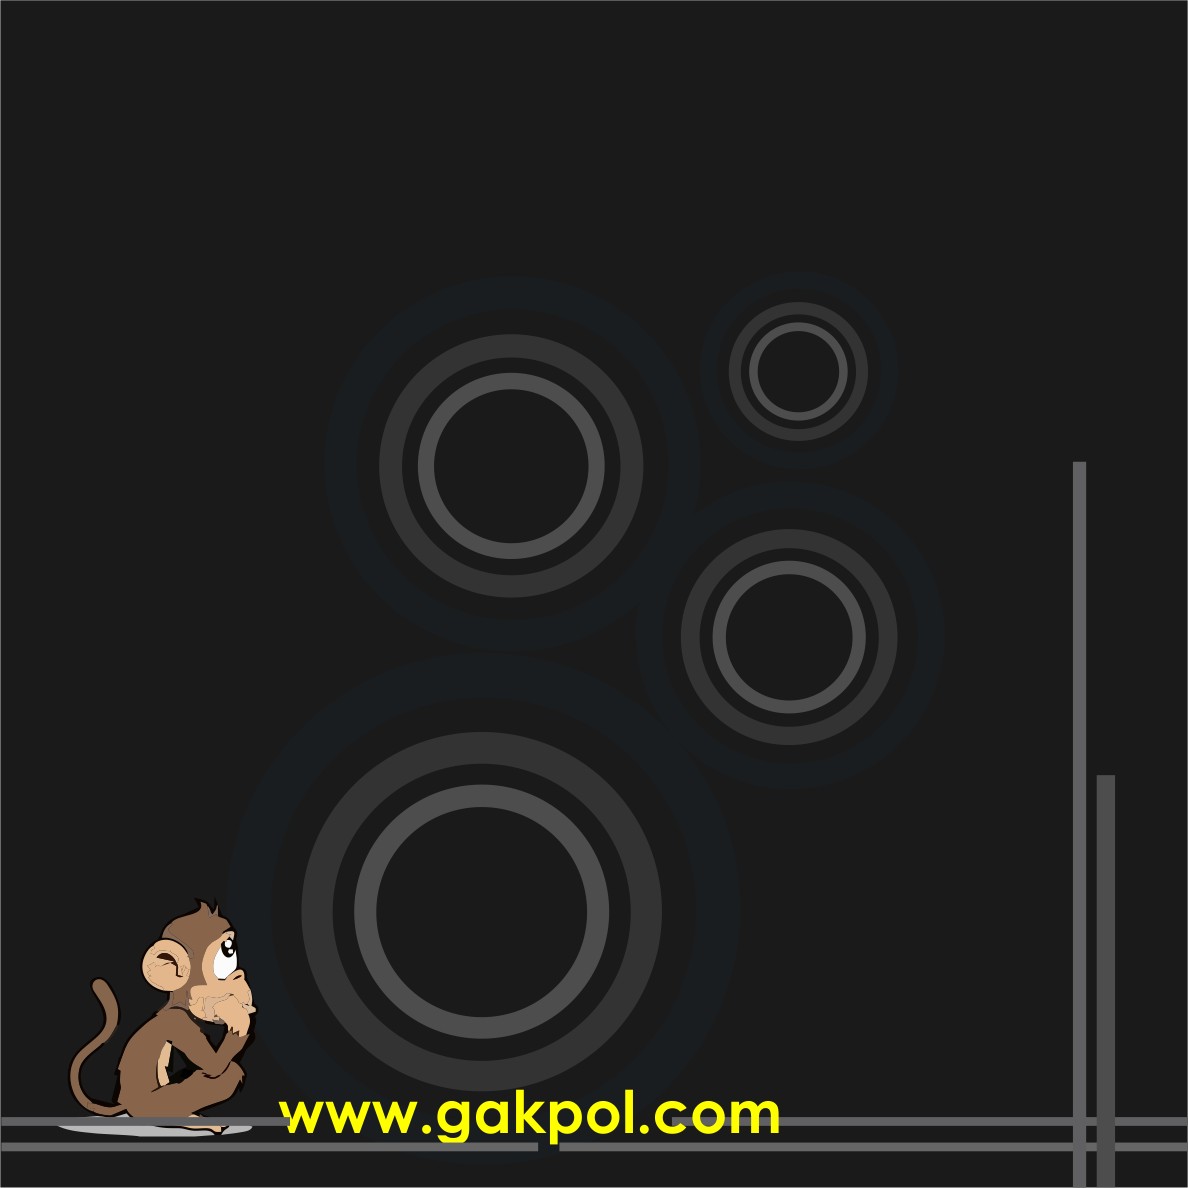 Download Template Dp Bbm Terbaru 2015 GaK Pol